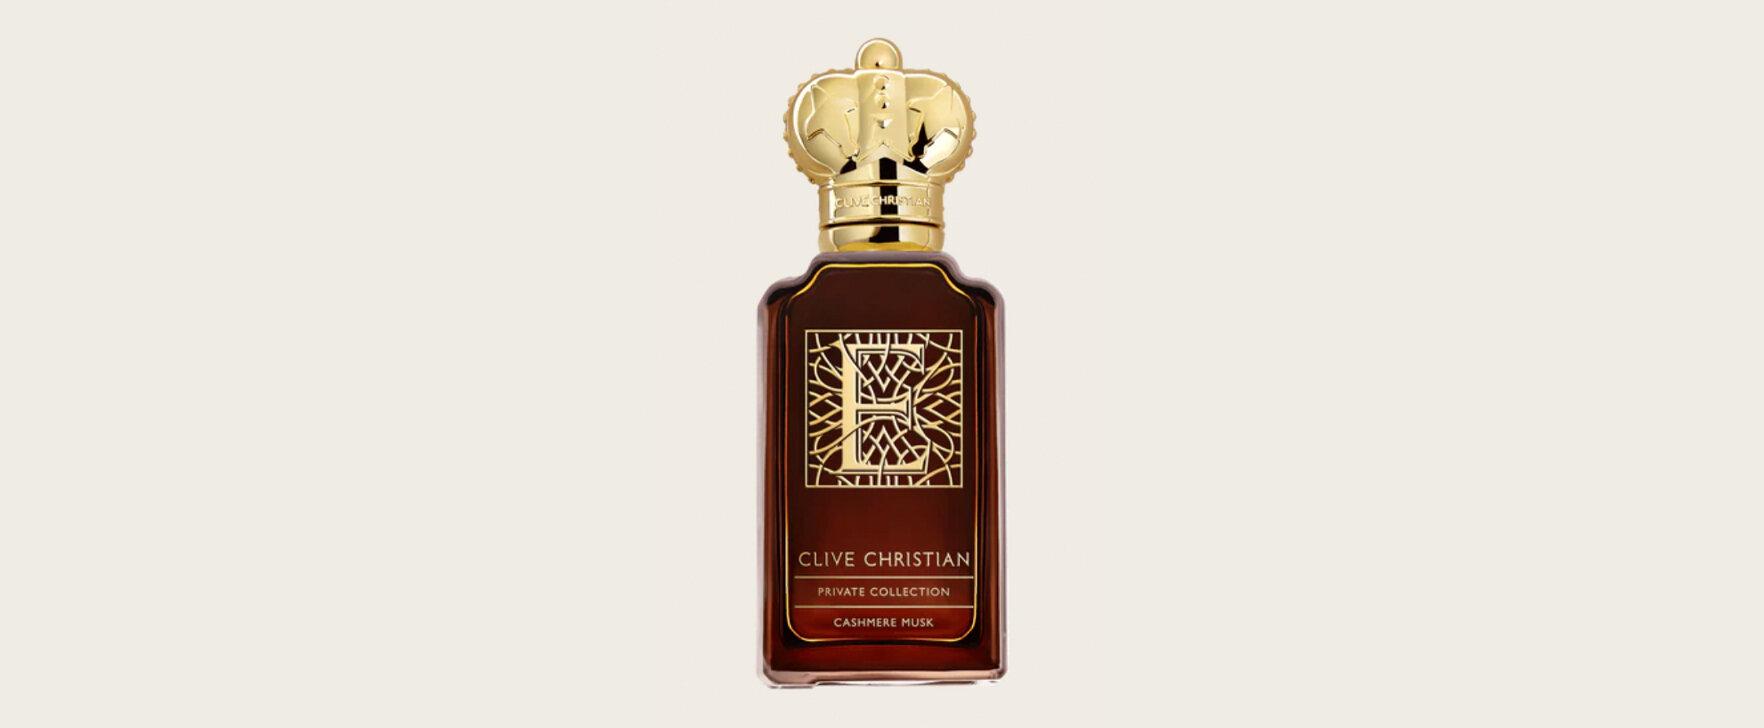 Ein Hauch von Eleganz: Das neue Parfum „Private Collection - E: Cashmere Musk“ von Clive Christian